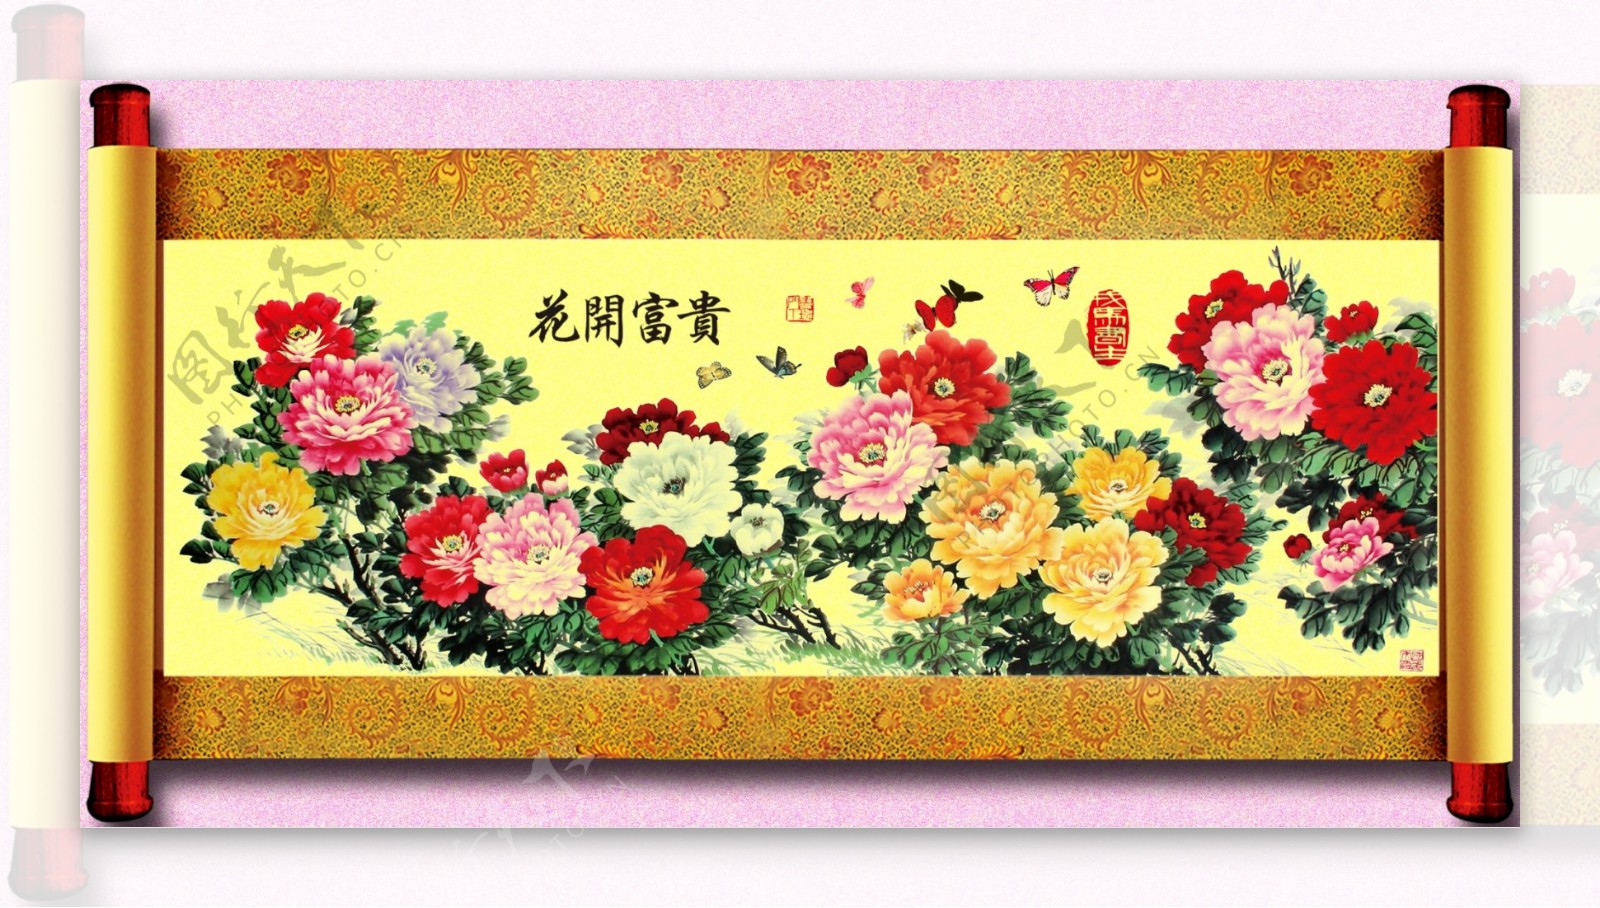 中国画卷轴牡丹图片